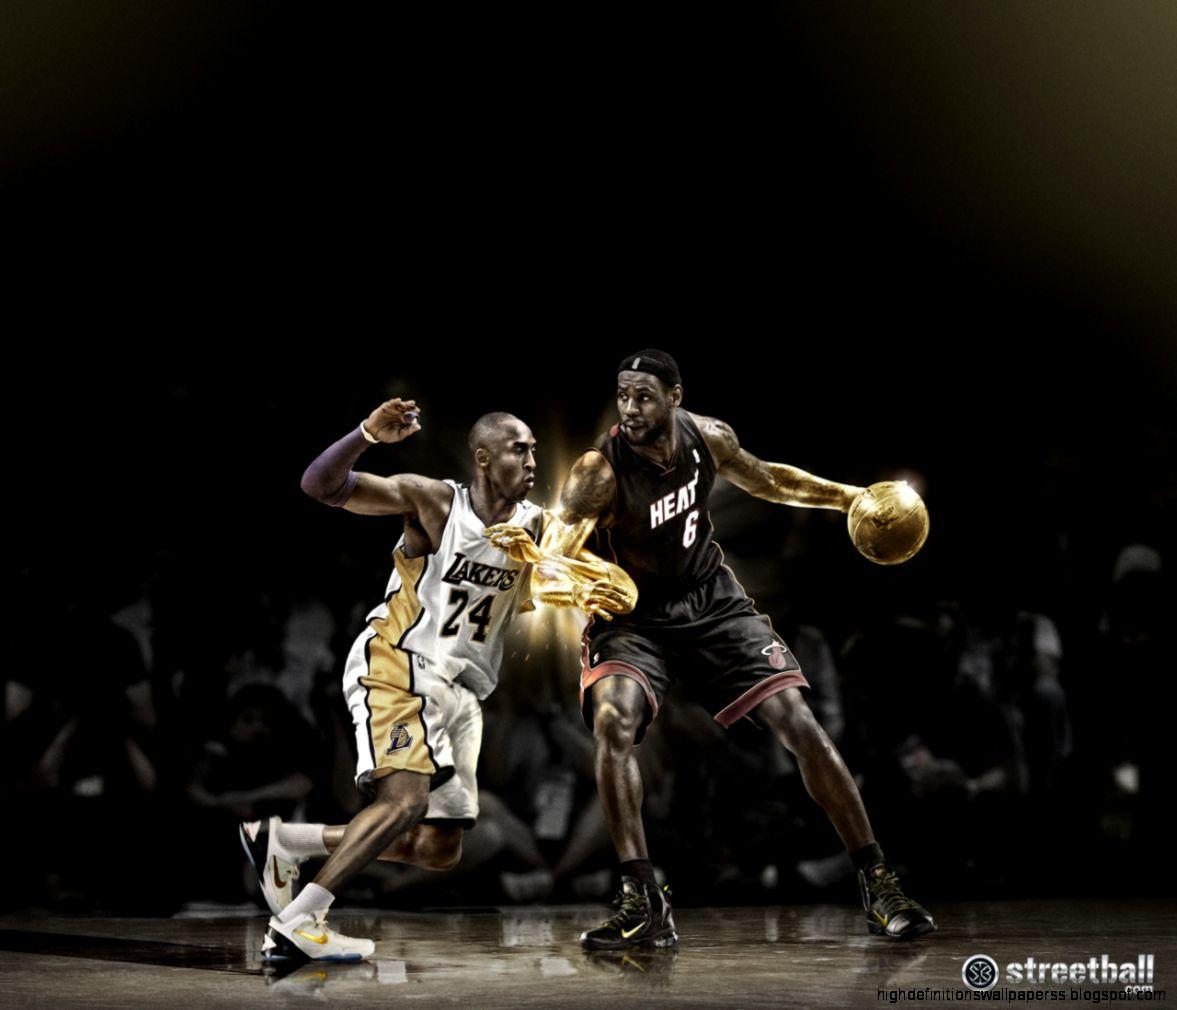 Kobe Dunks Over LeBron (iPhone Wallpaper) by SkdWorld on DeviantArt